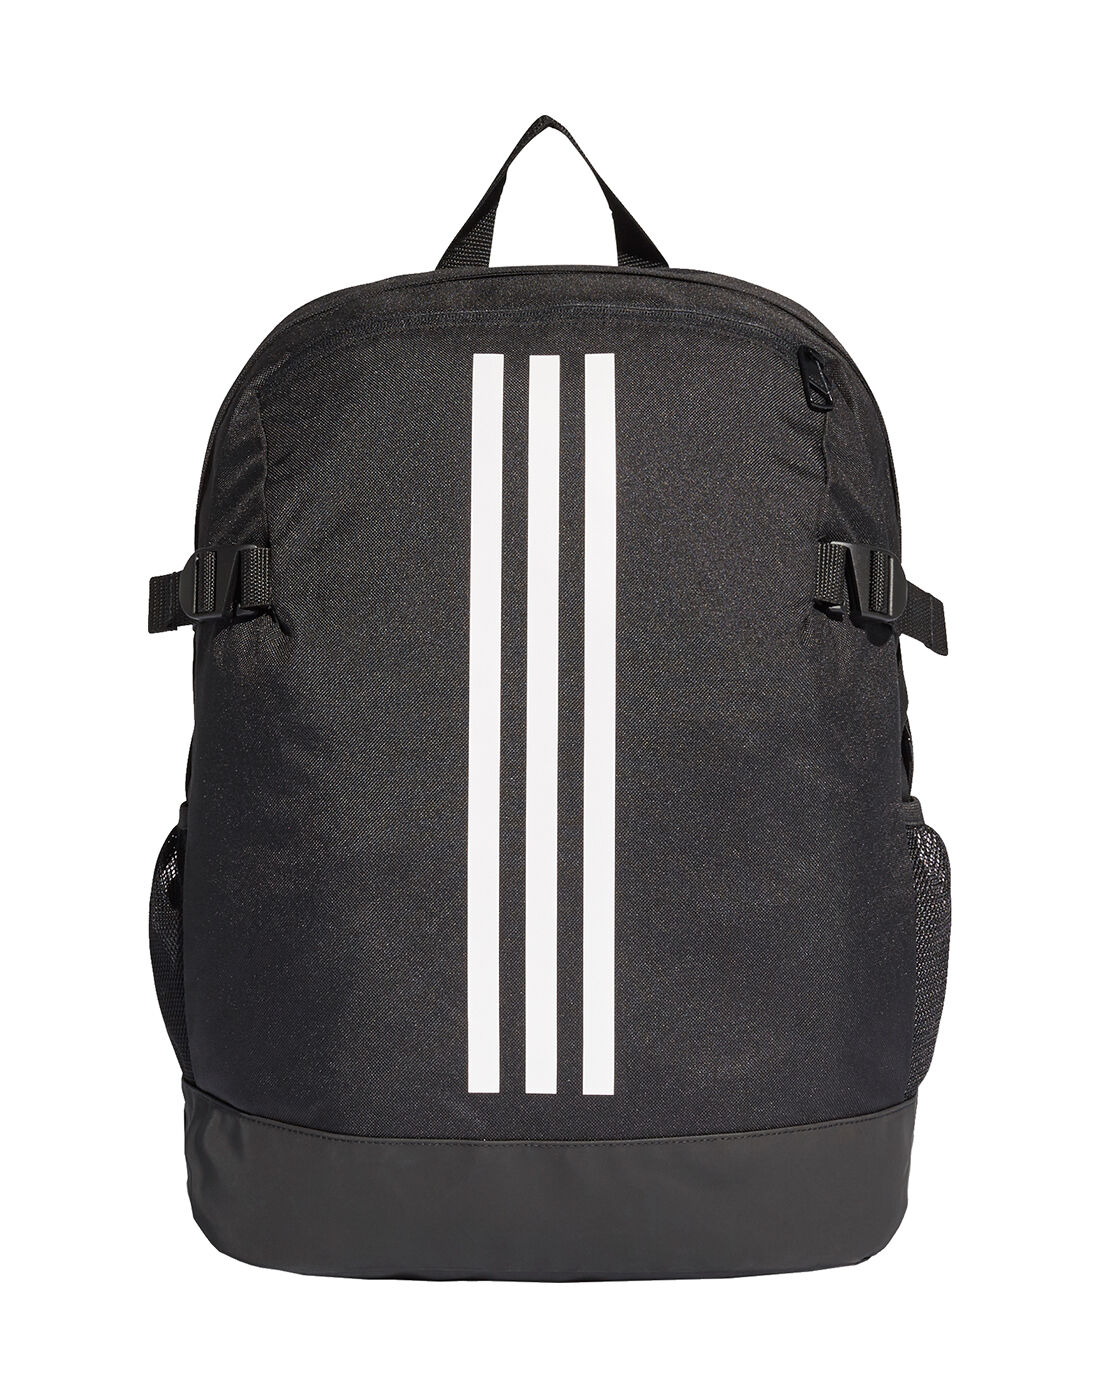 adidas school backpack black